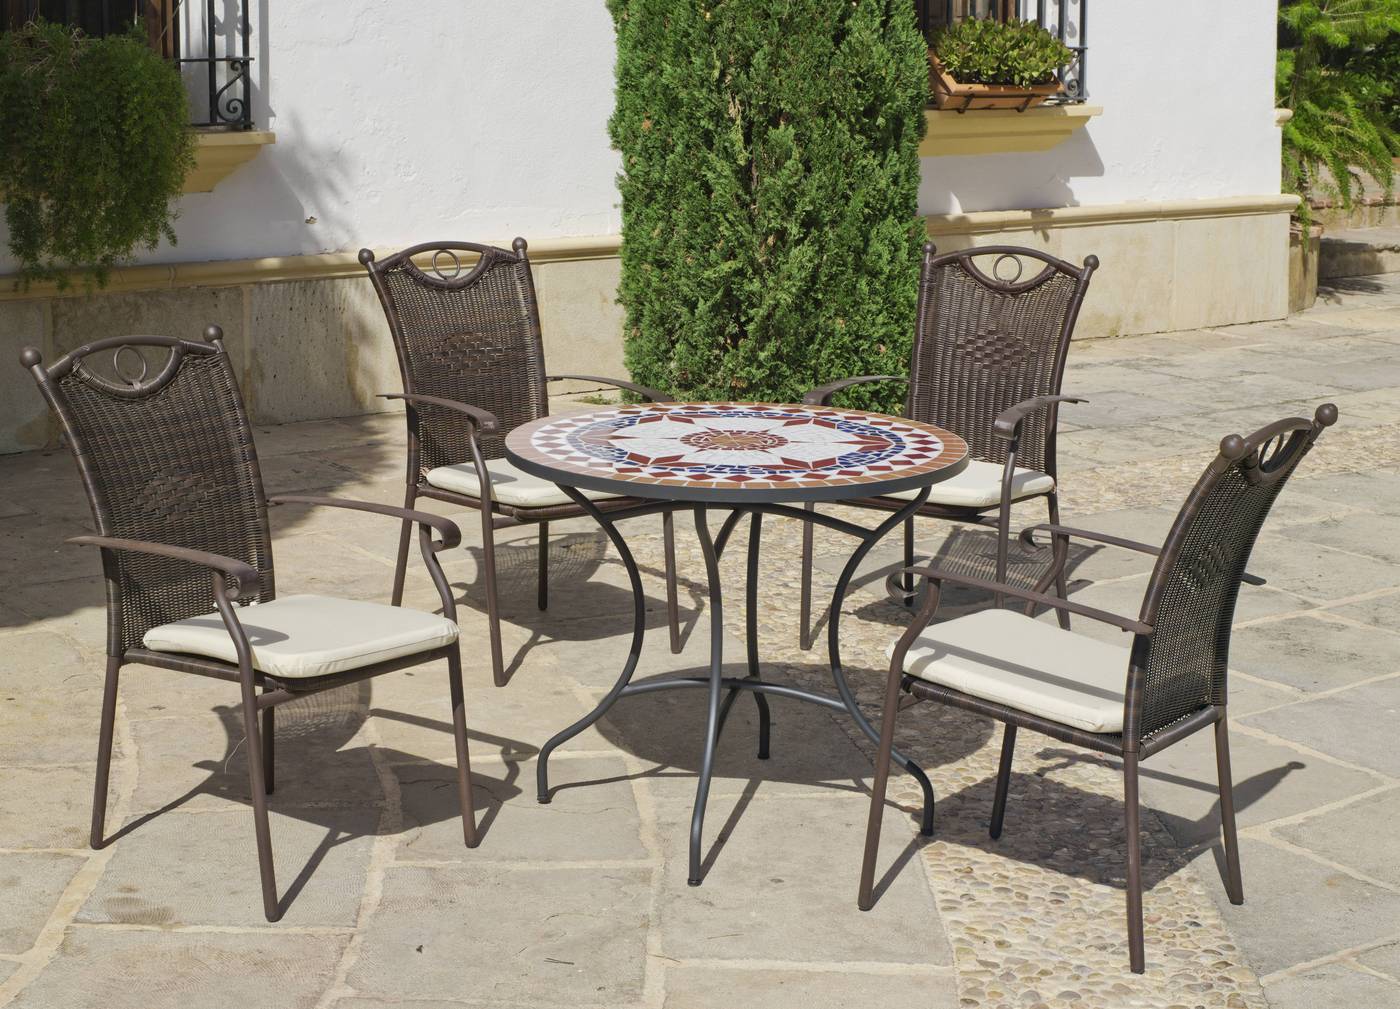 Conjunto de forja color bronce: mesa redonda de acero forjado, con tablero mosaico de 90 cm. + 4 sillones de acero y wicker